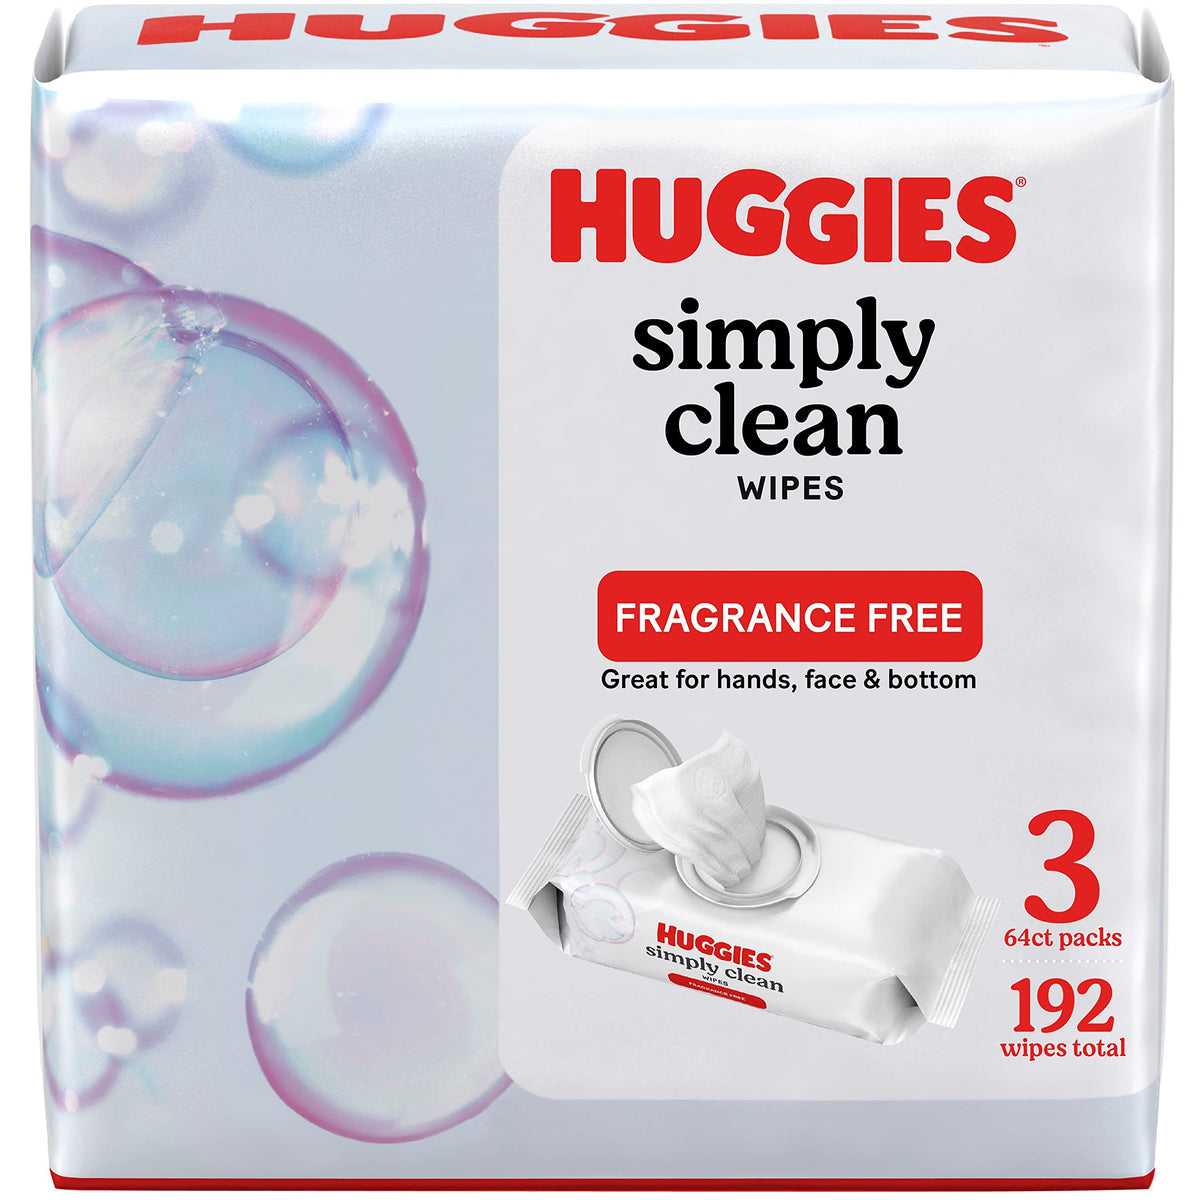 Huggies Simply Clean Unscented Wipes, 3 Flip-Top Packs (192 Wipes Total)